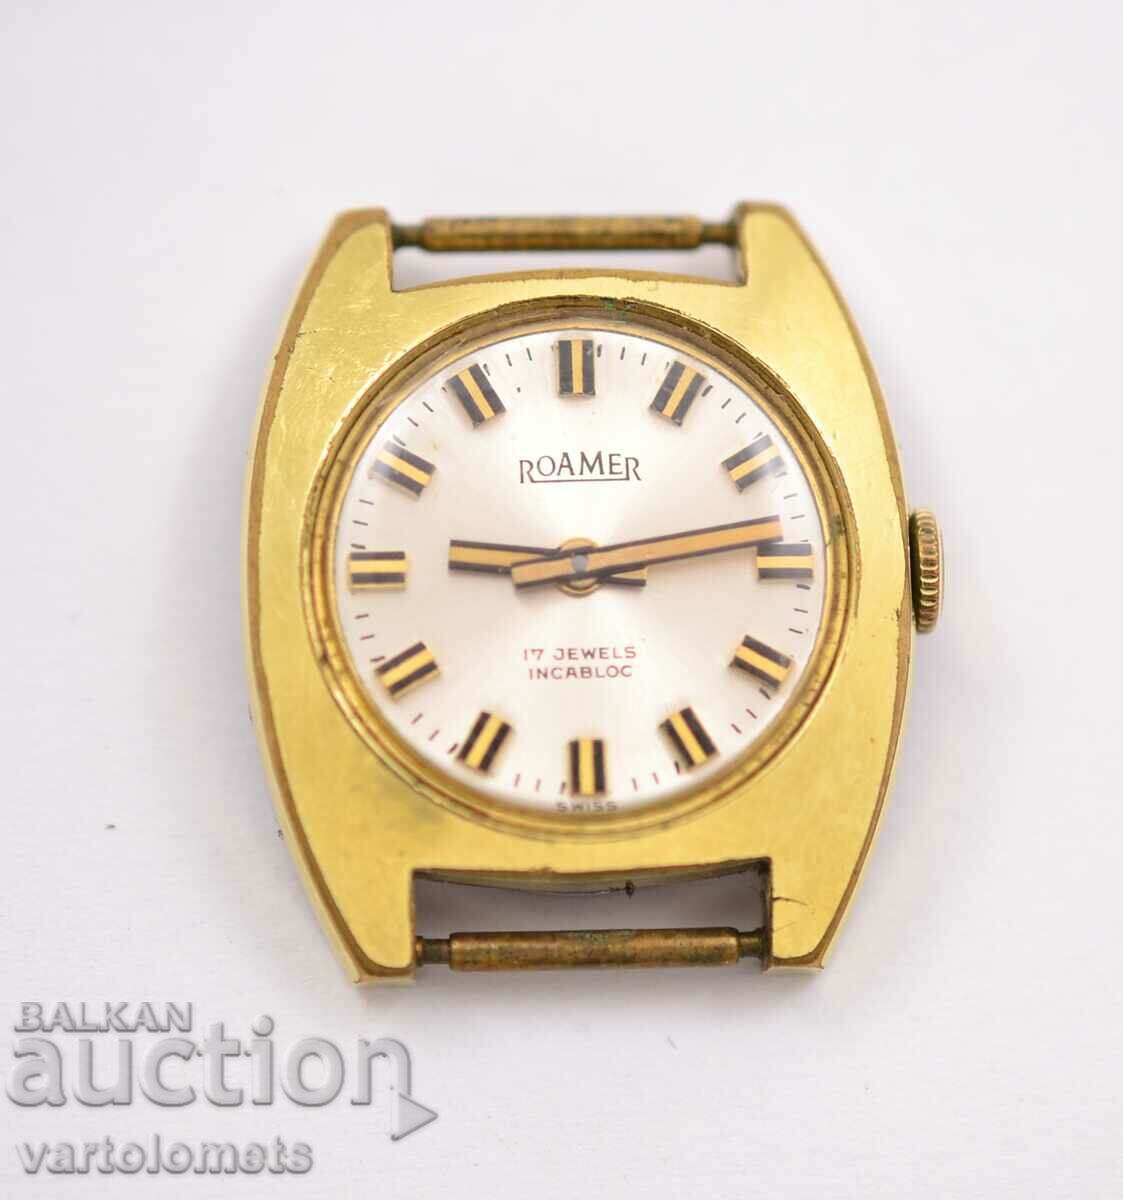 Дамски часовник  ROAMER Swiss made с позлата   -   работи